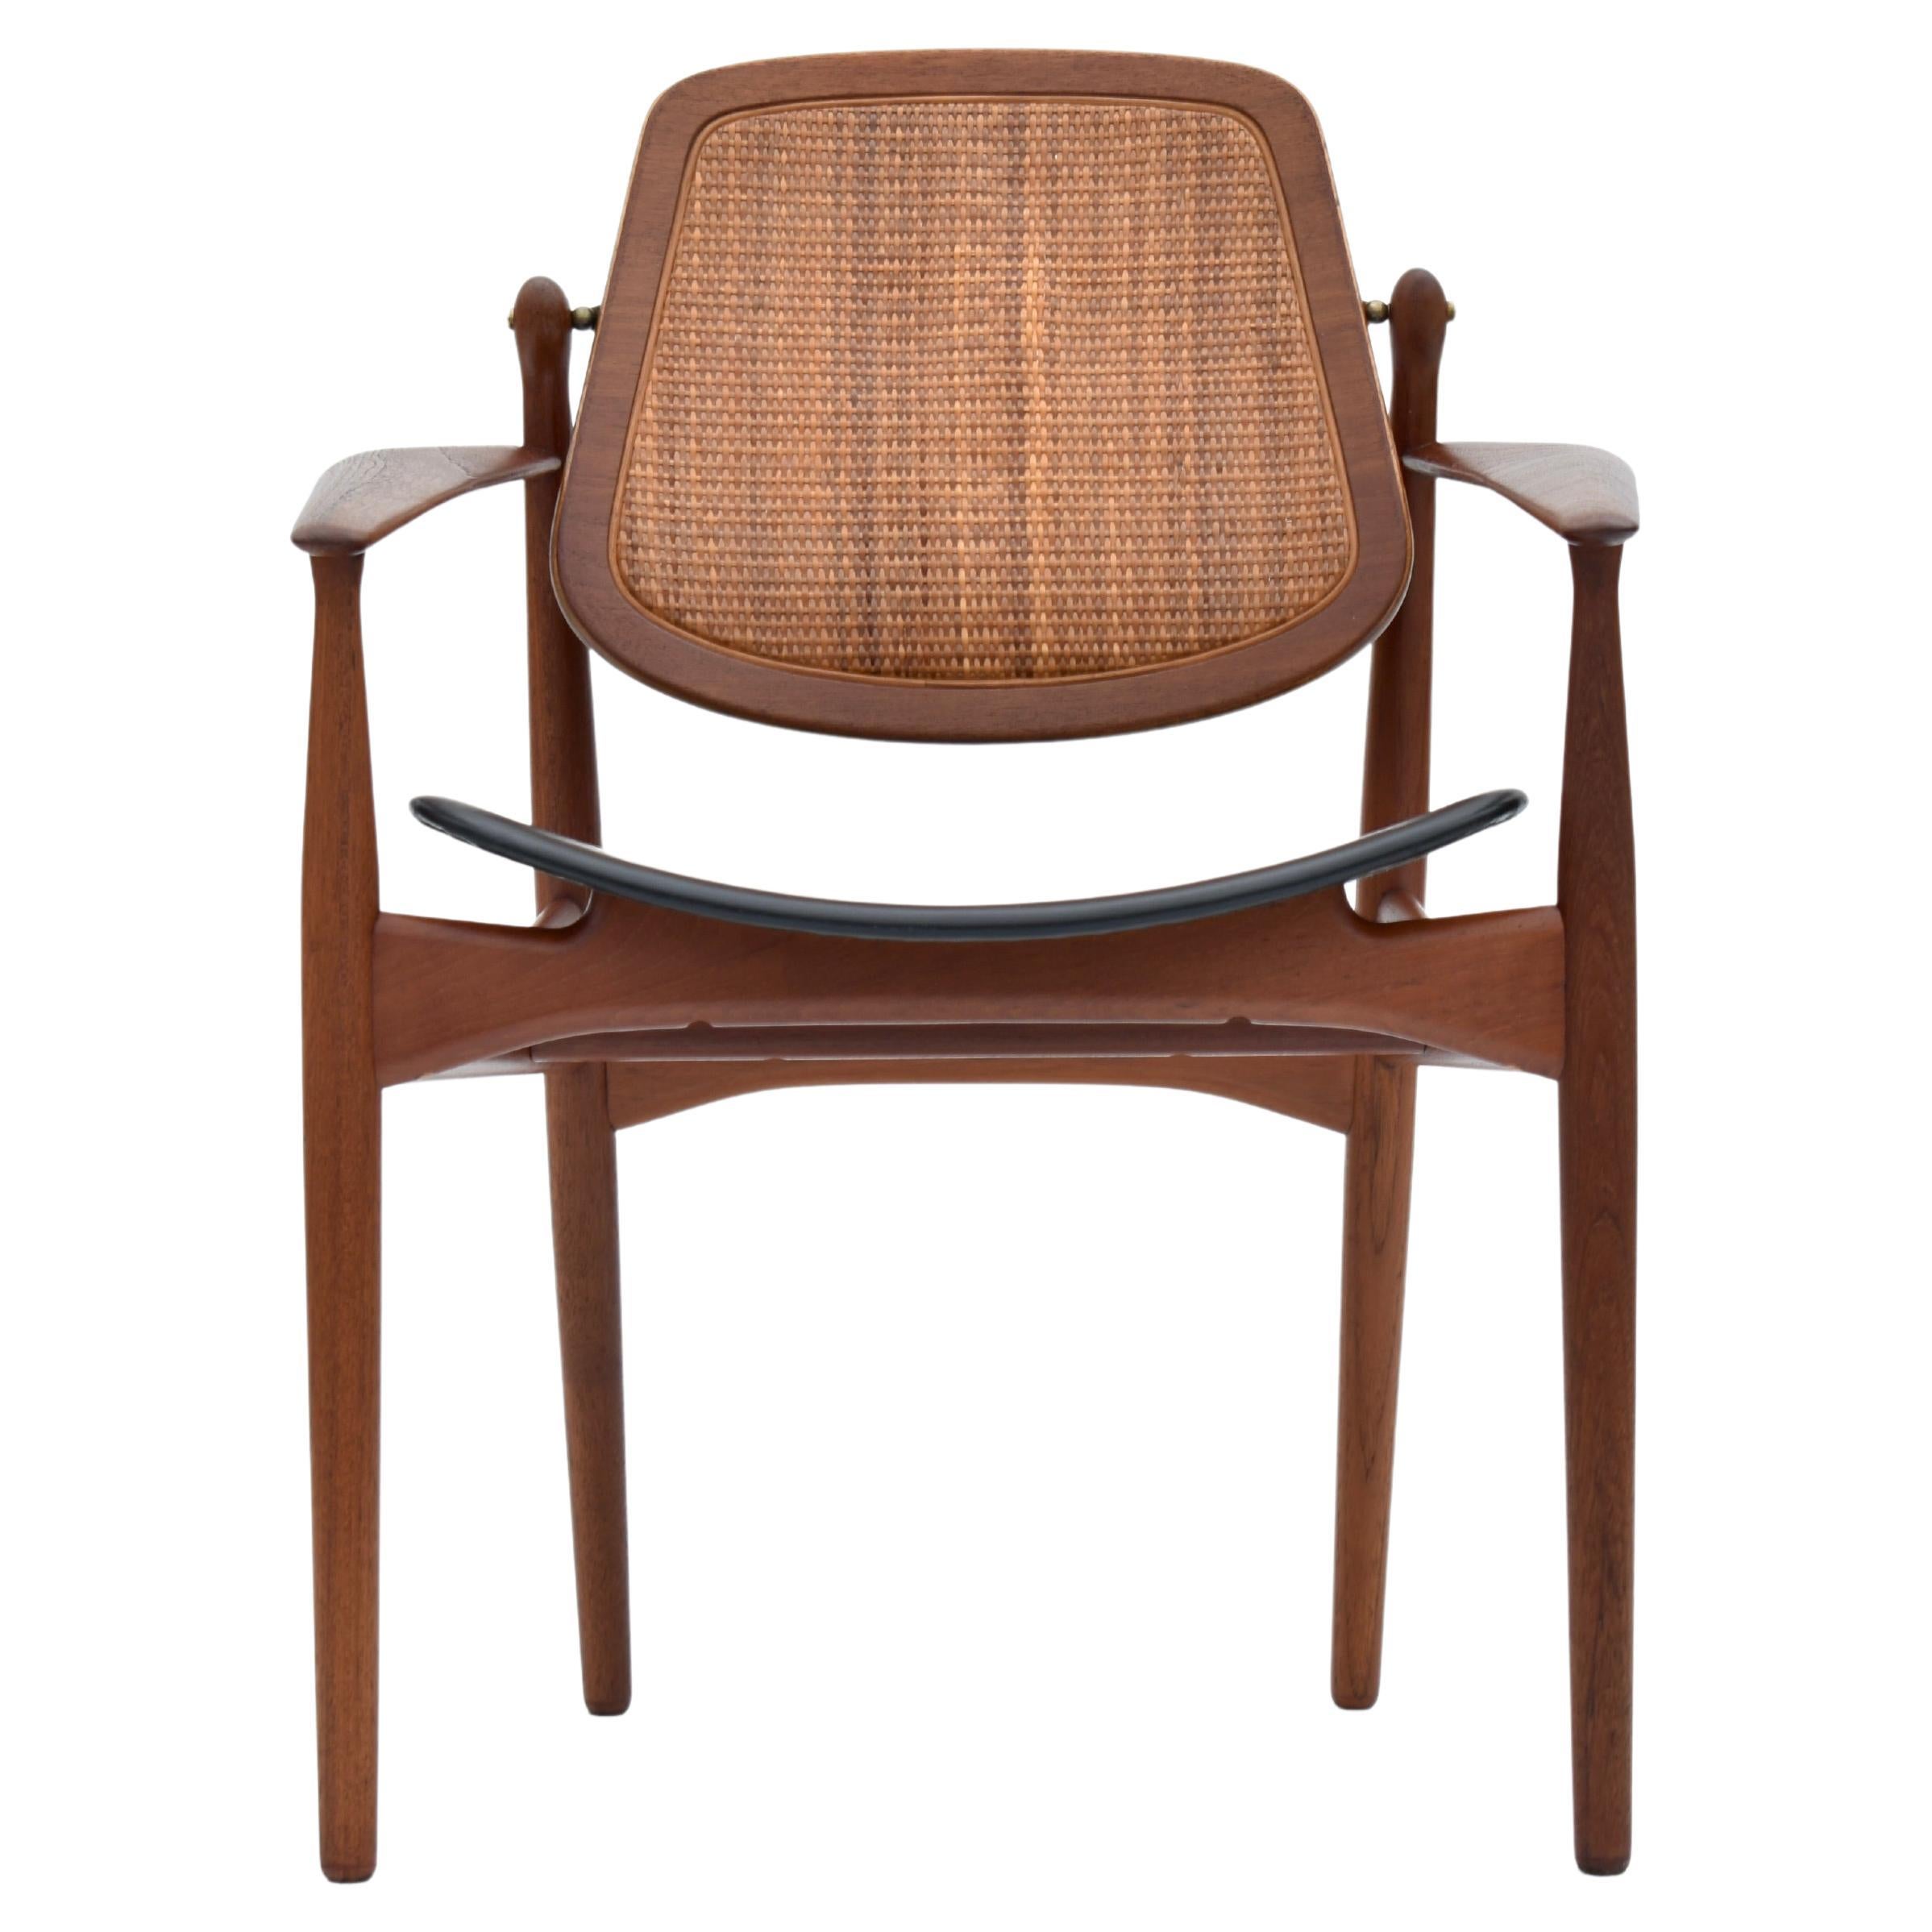 Arne Vodder Model 186 Teak, Rattan & Leather Chair For France & Son, Denmark